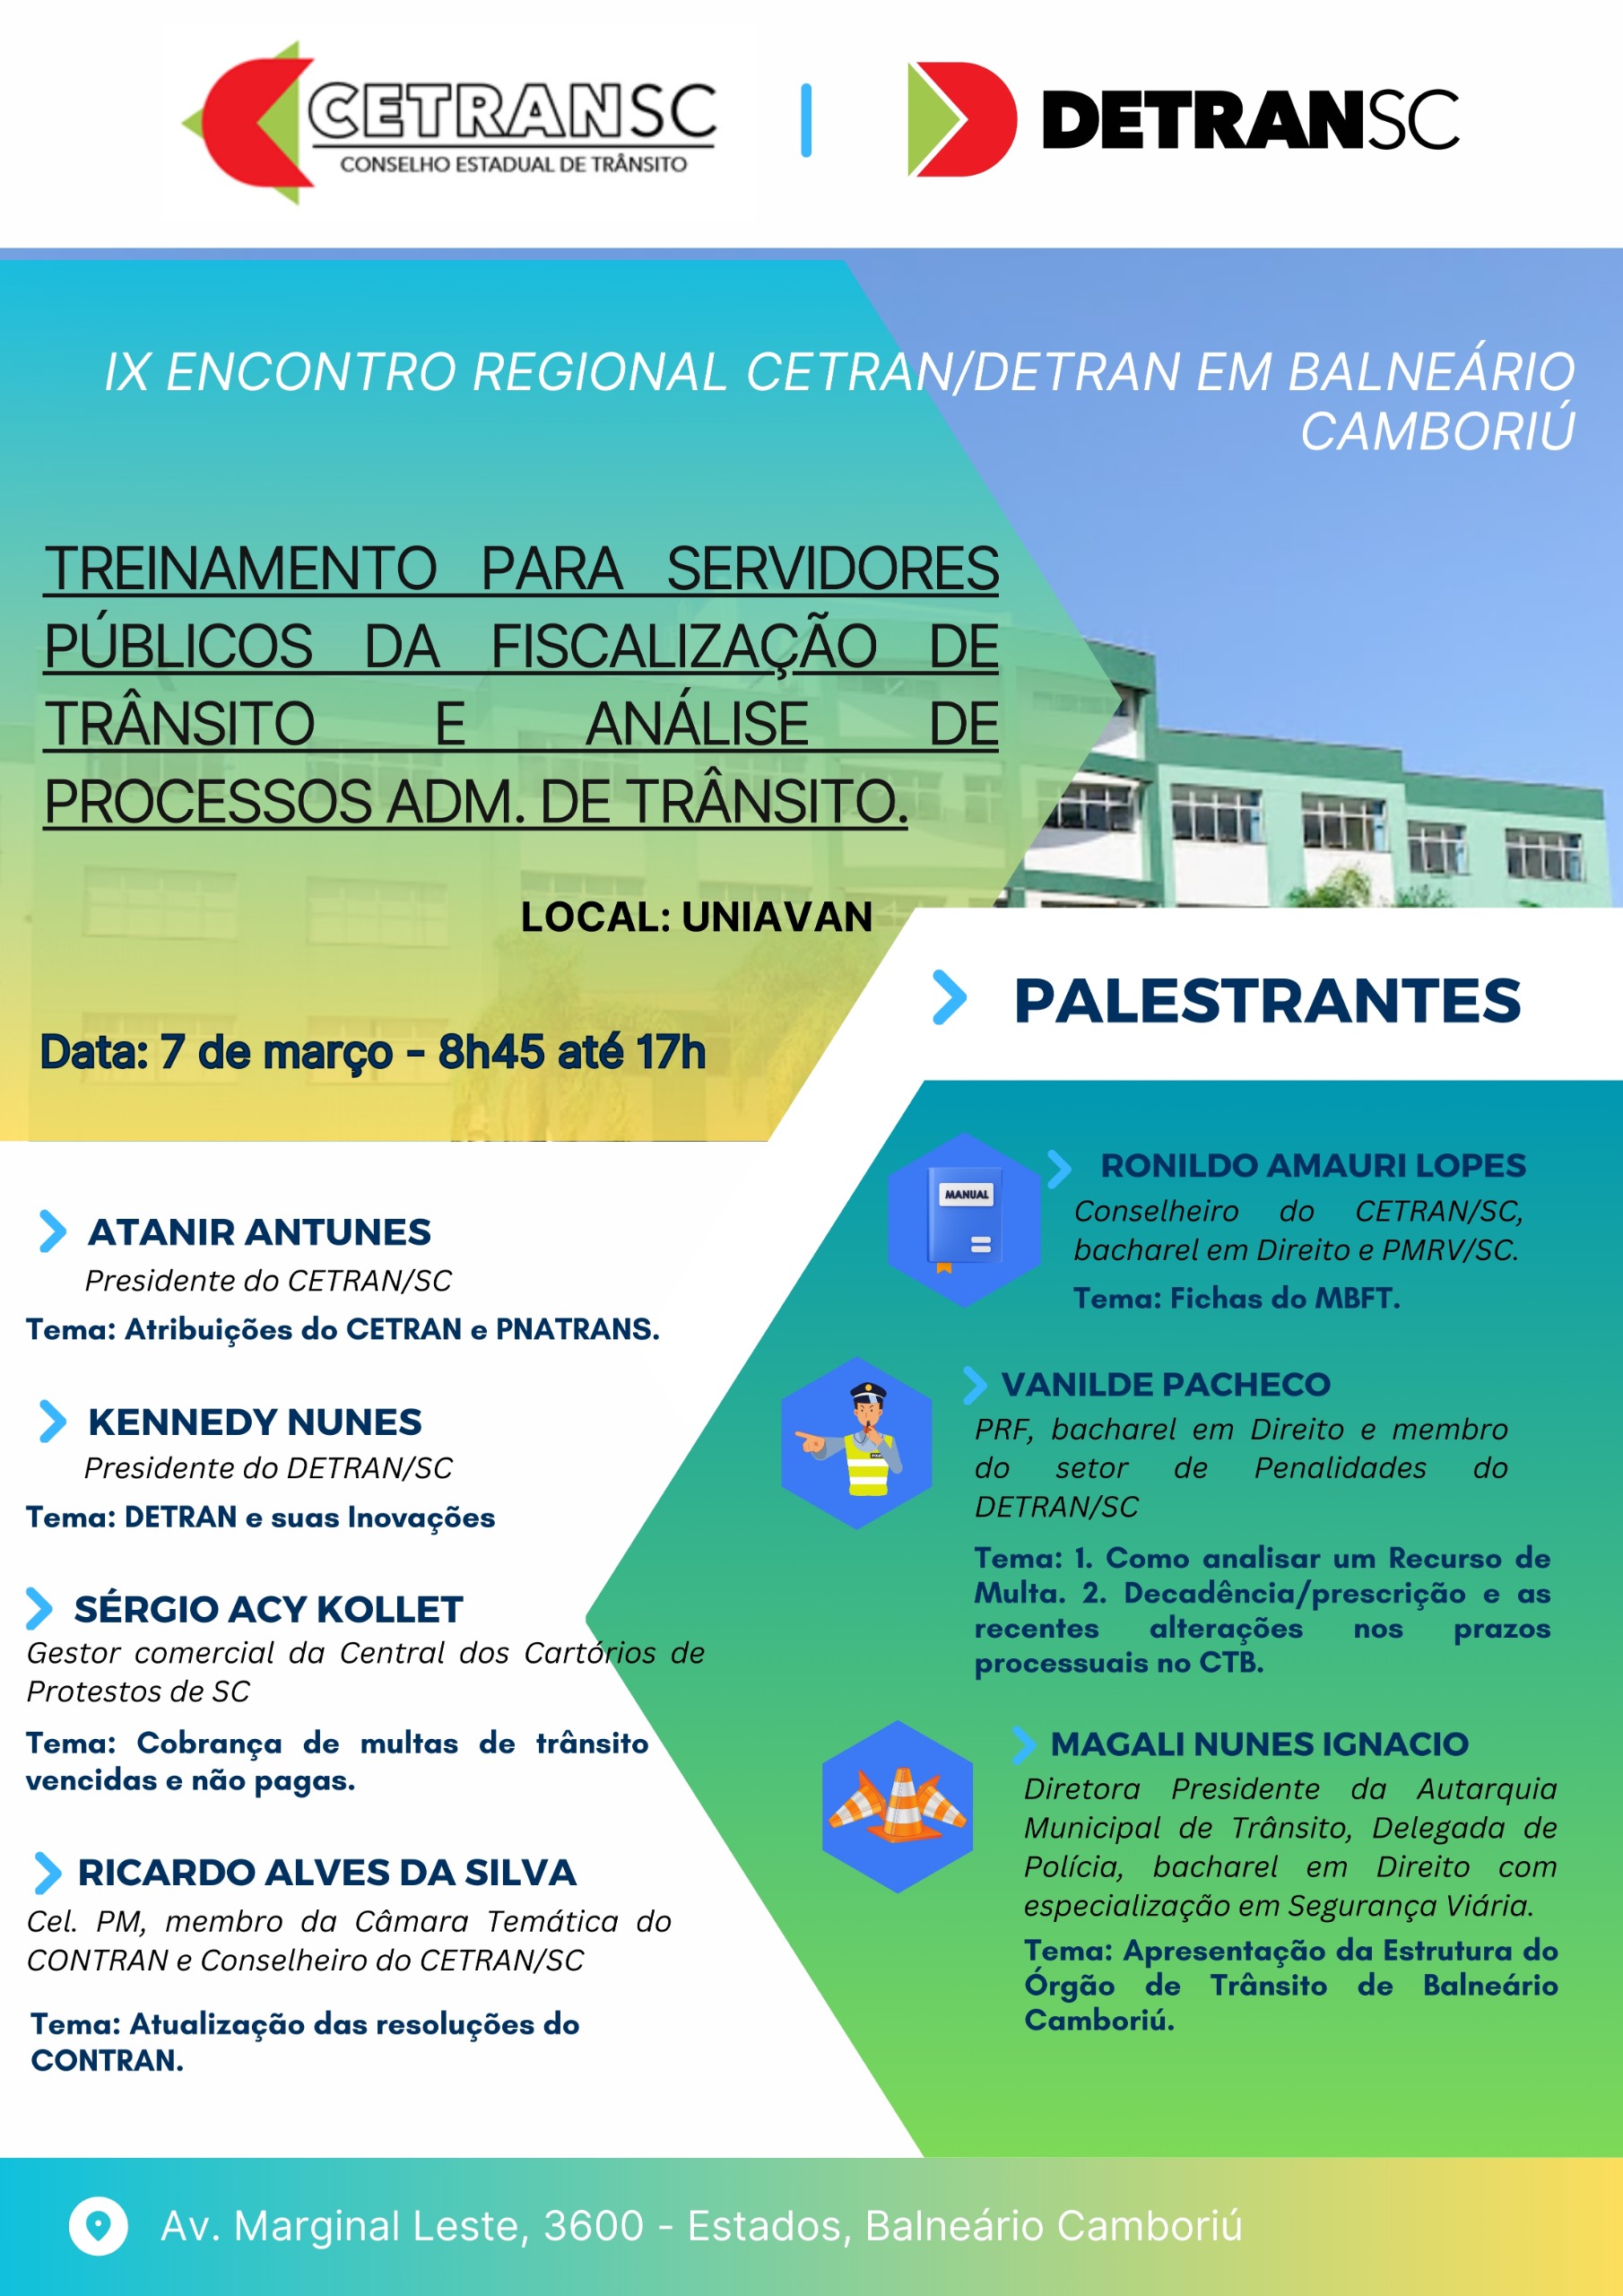 IX ENCONTRO REGIONAL CETRAN/DETRAN EM BALNEÁRIO CAMBORIÚ